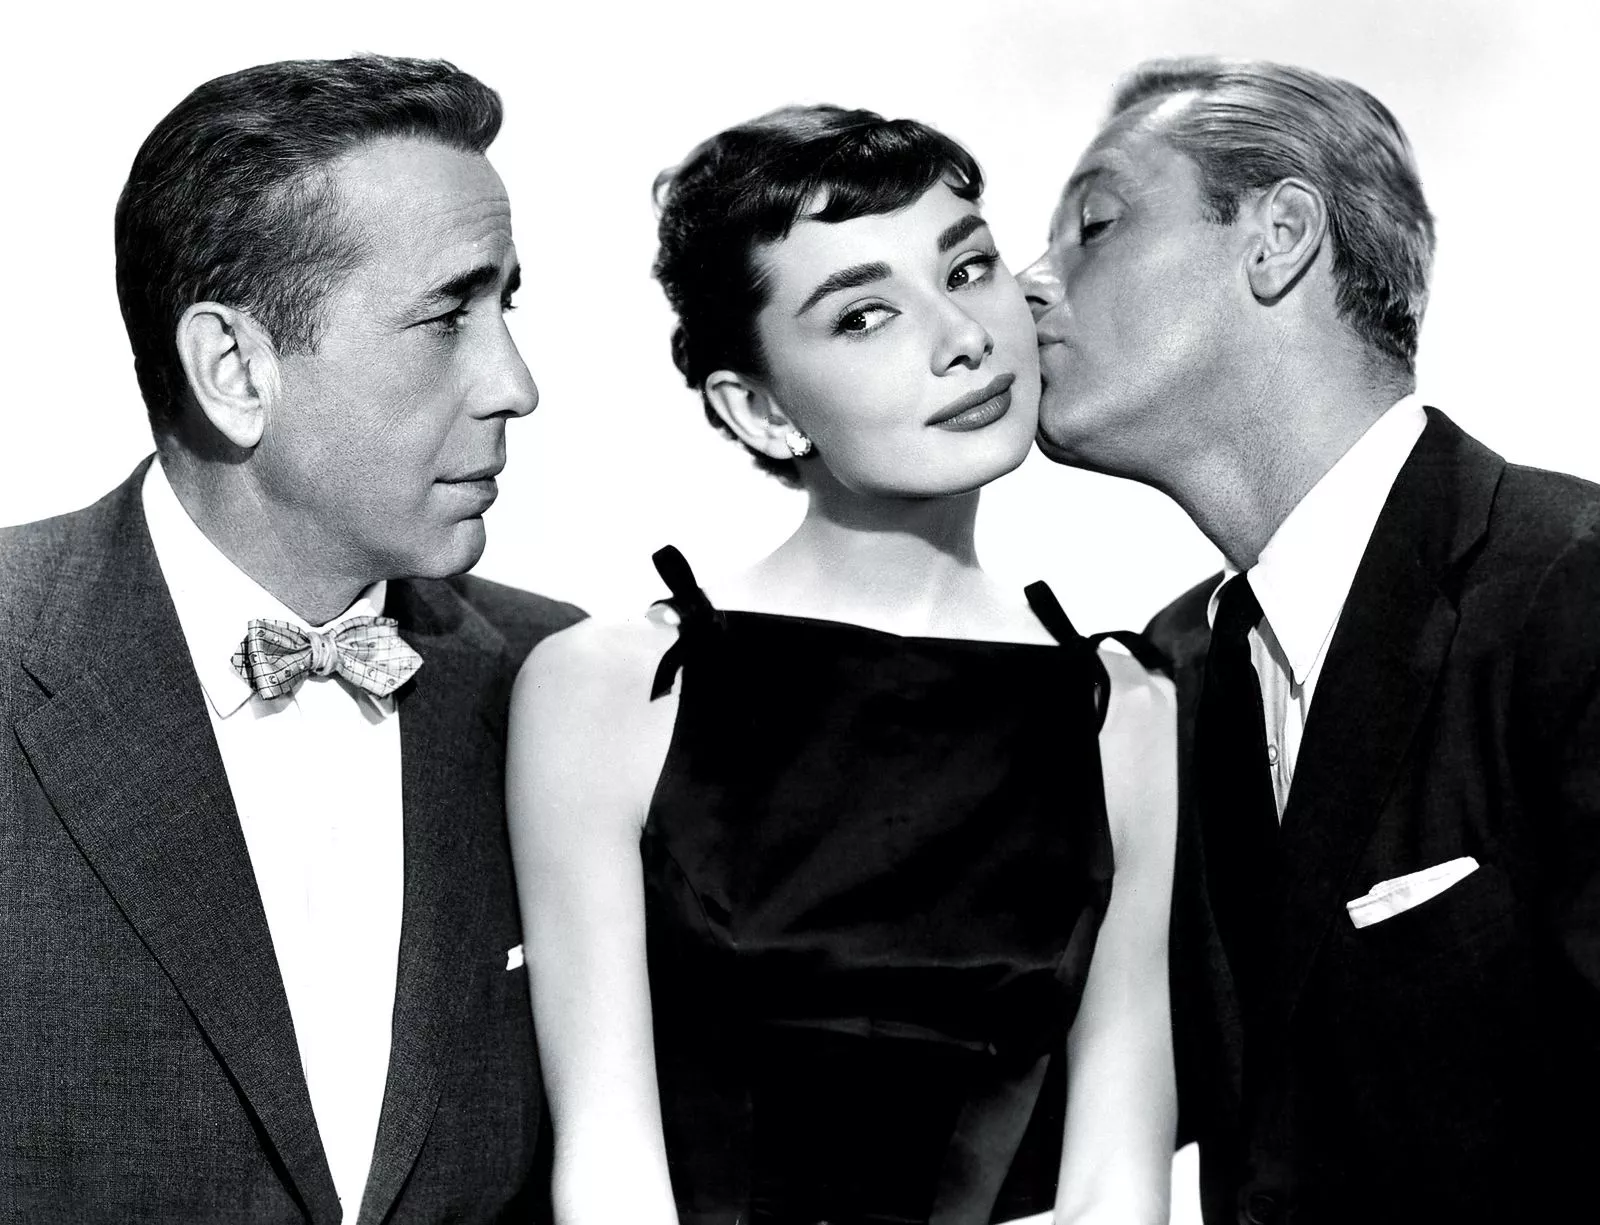 Хамфри Богарт, Одри Хепберн и Уильям Холден в фильме «Сабрина», 1954 г.